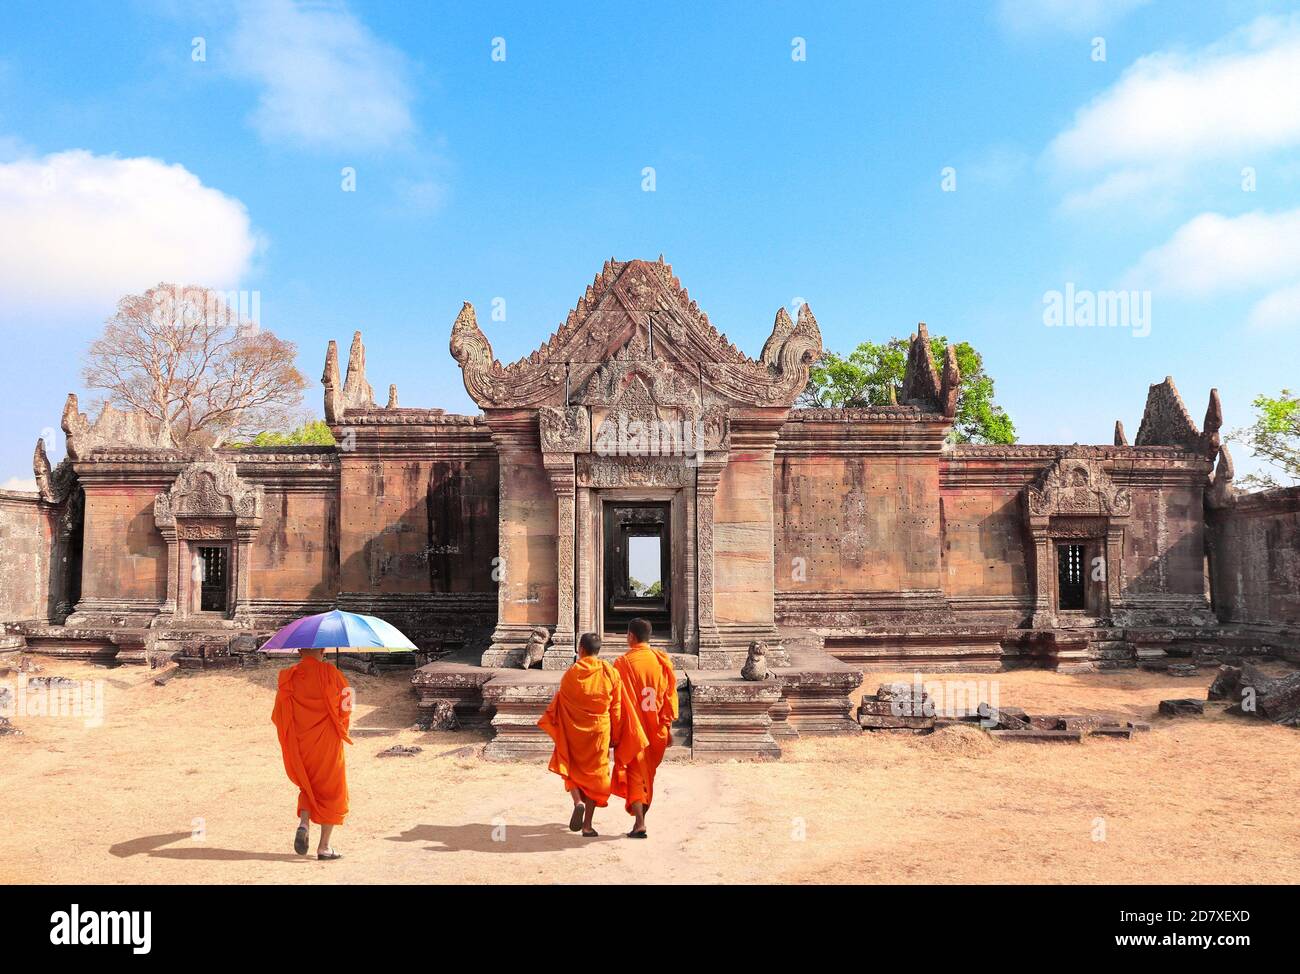 Trois moines bouddhistes vont à Gopura I dans le complexe du temple de Preah Vihear (Prasat Phra Wihan), Cambodge. Patrimoine mondial de l'UNESCO Banque D'Images